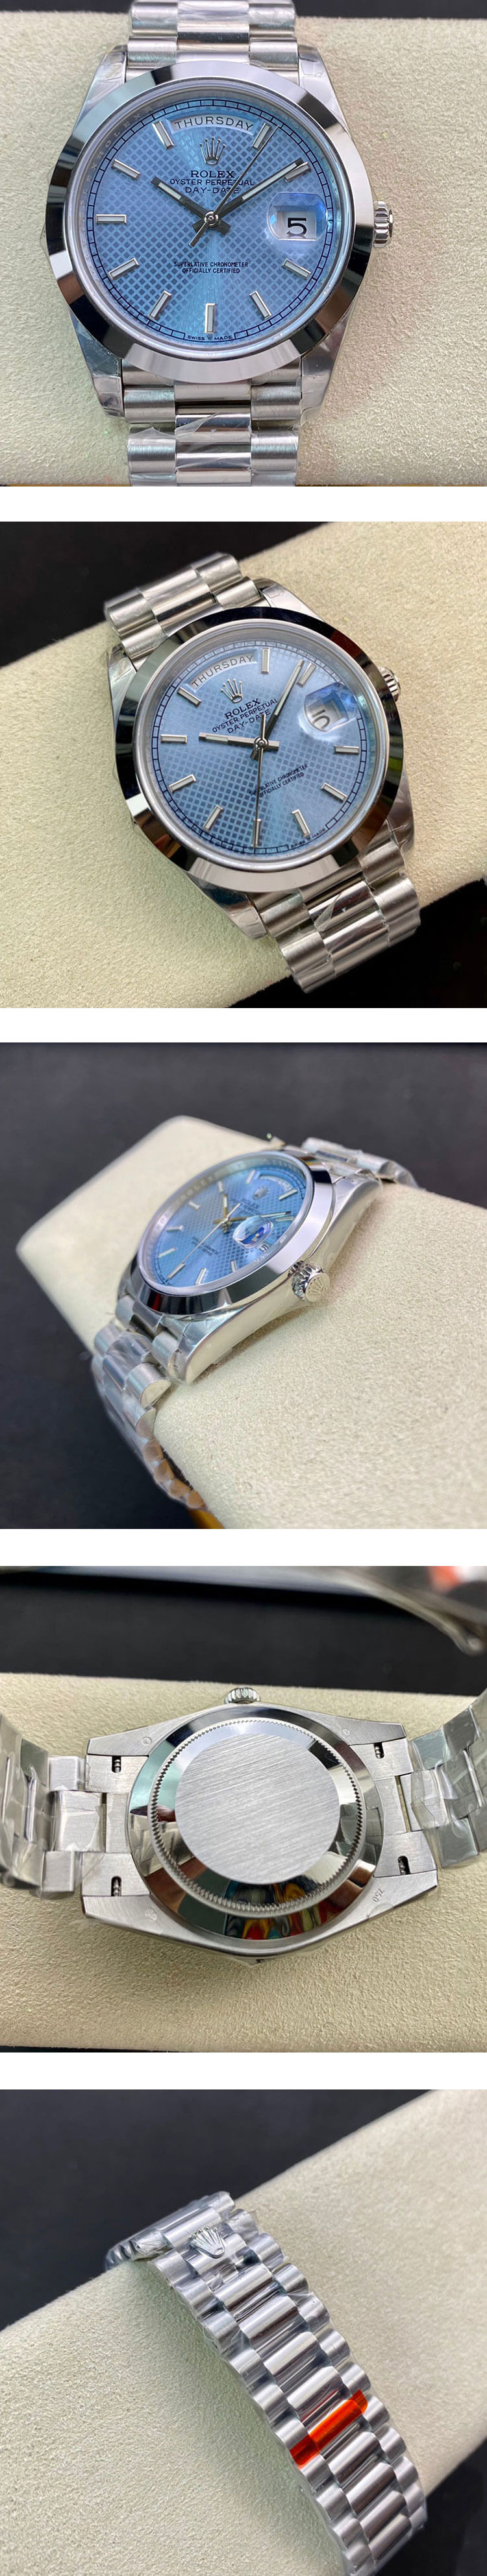 高級腕時計 ロレックスコピー 228206 デイデイト 40mm アイスブルー 斜め格子モチーフ